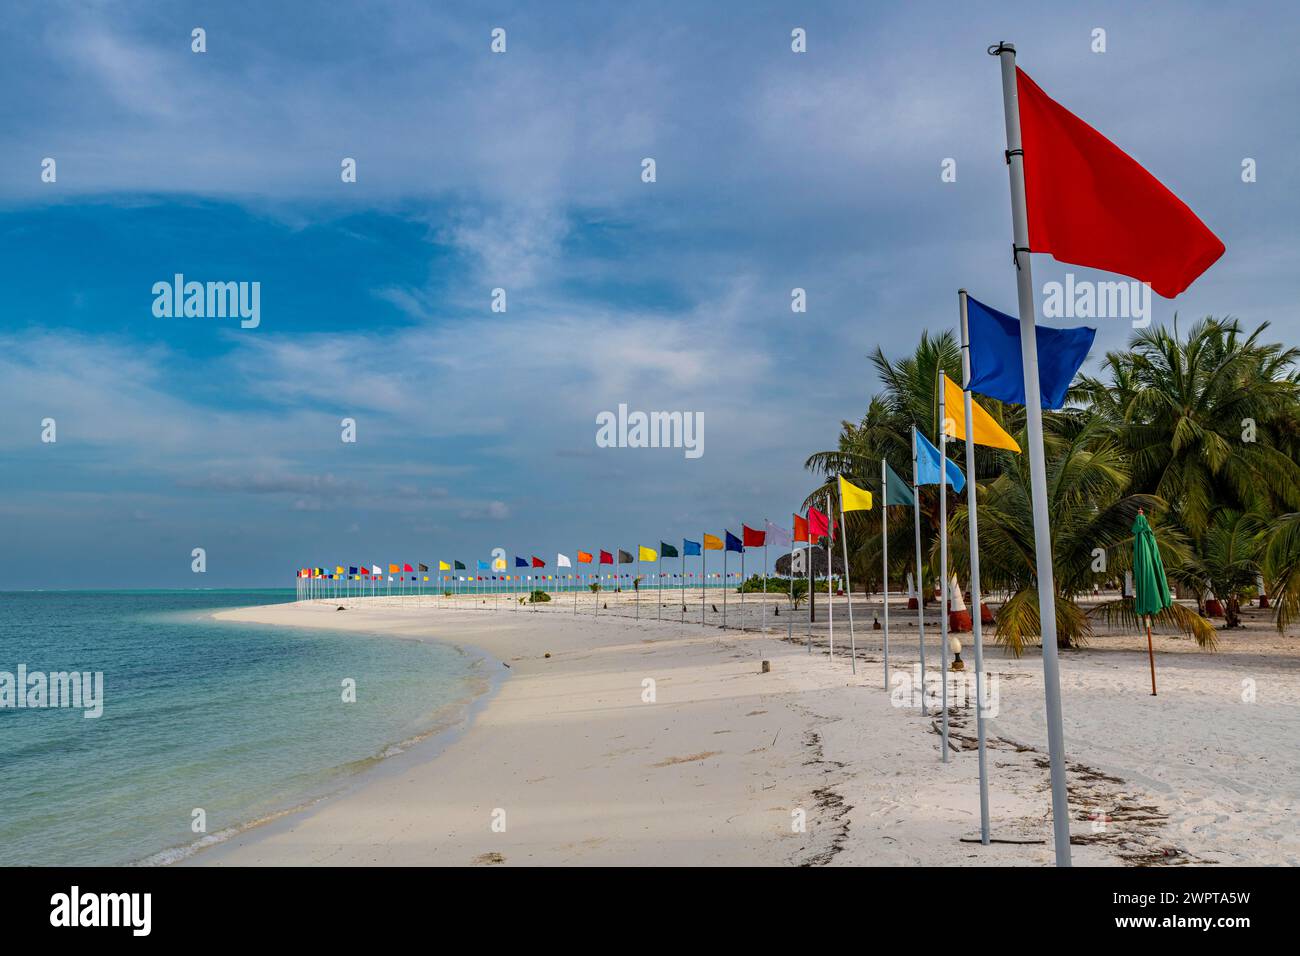 White sand beach with many flags, Bangaram island, Lakshadweep archipelago, Union territory of India Stock Photo